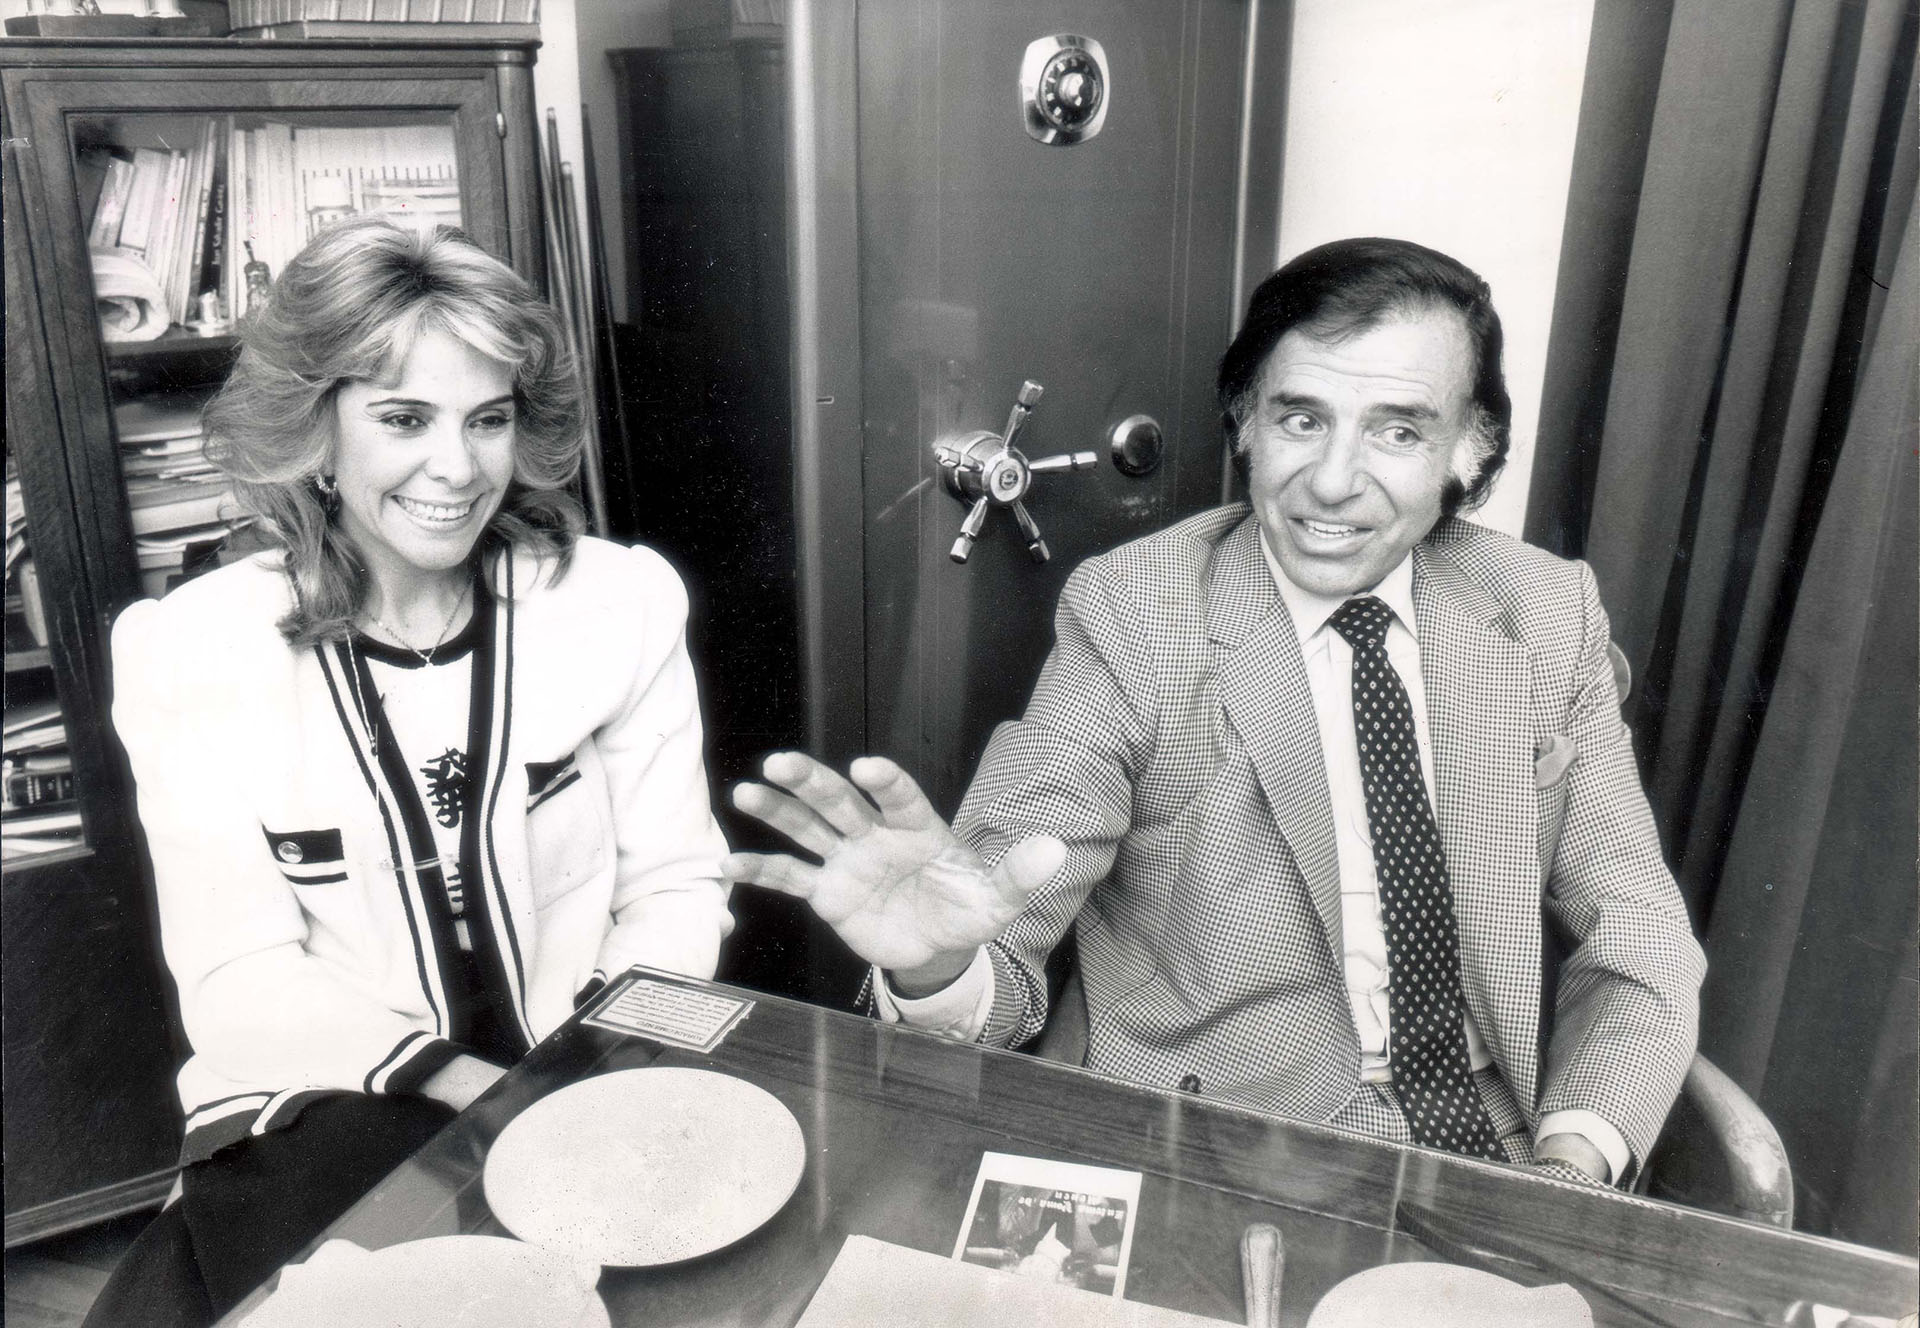 Carlos Menem y su entonces esposa, Zulema, a finales de la década de los 80. (Bill Cross/Daily Mail/Shutterstock)